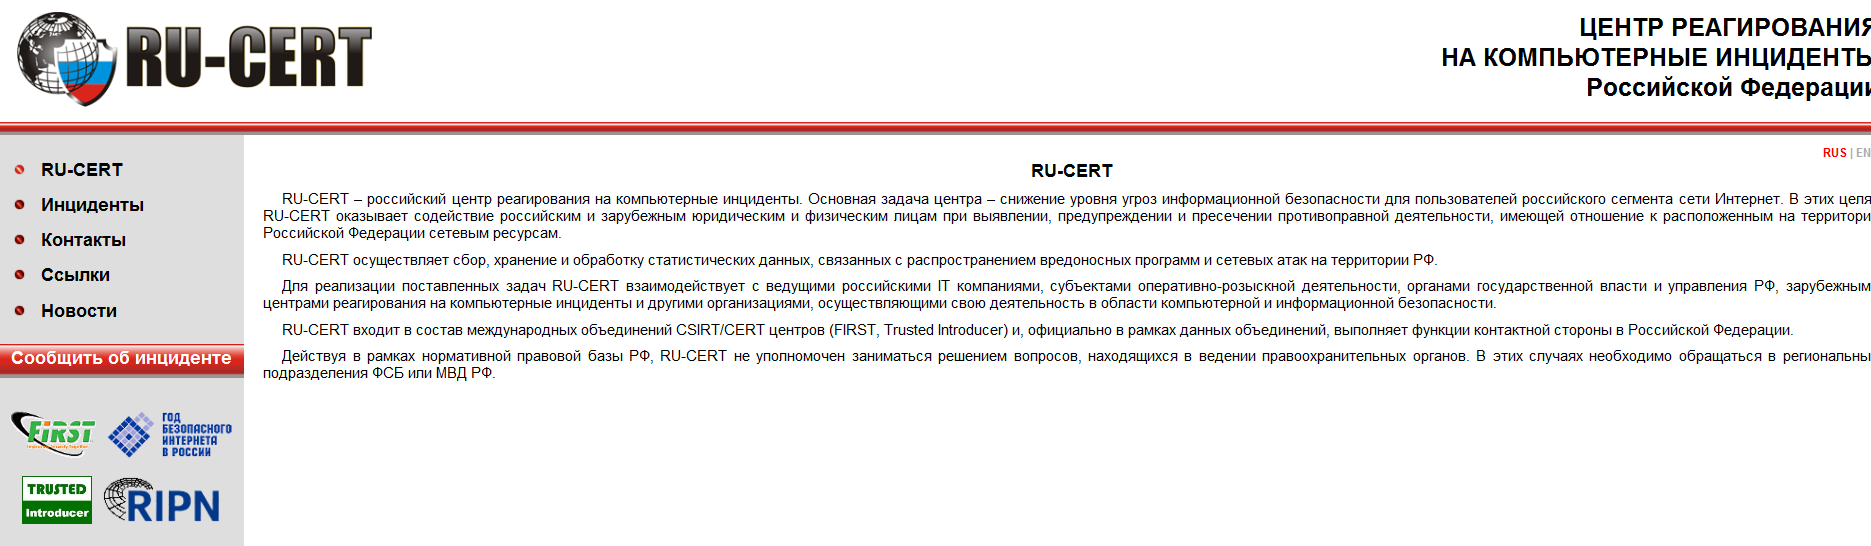 Homepage of RU-CERT